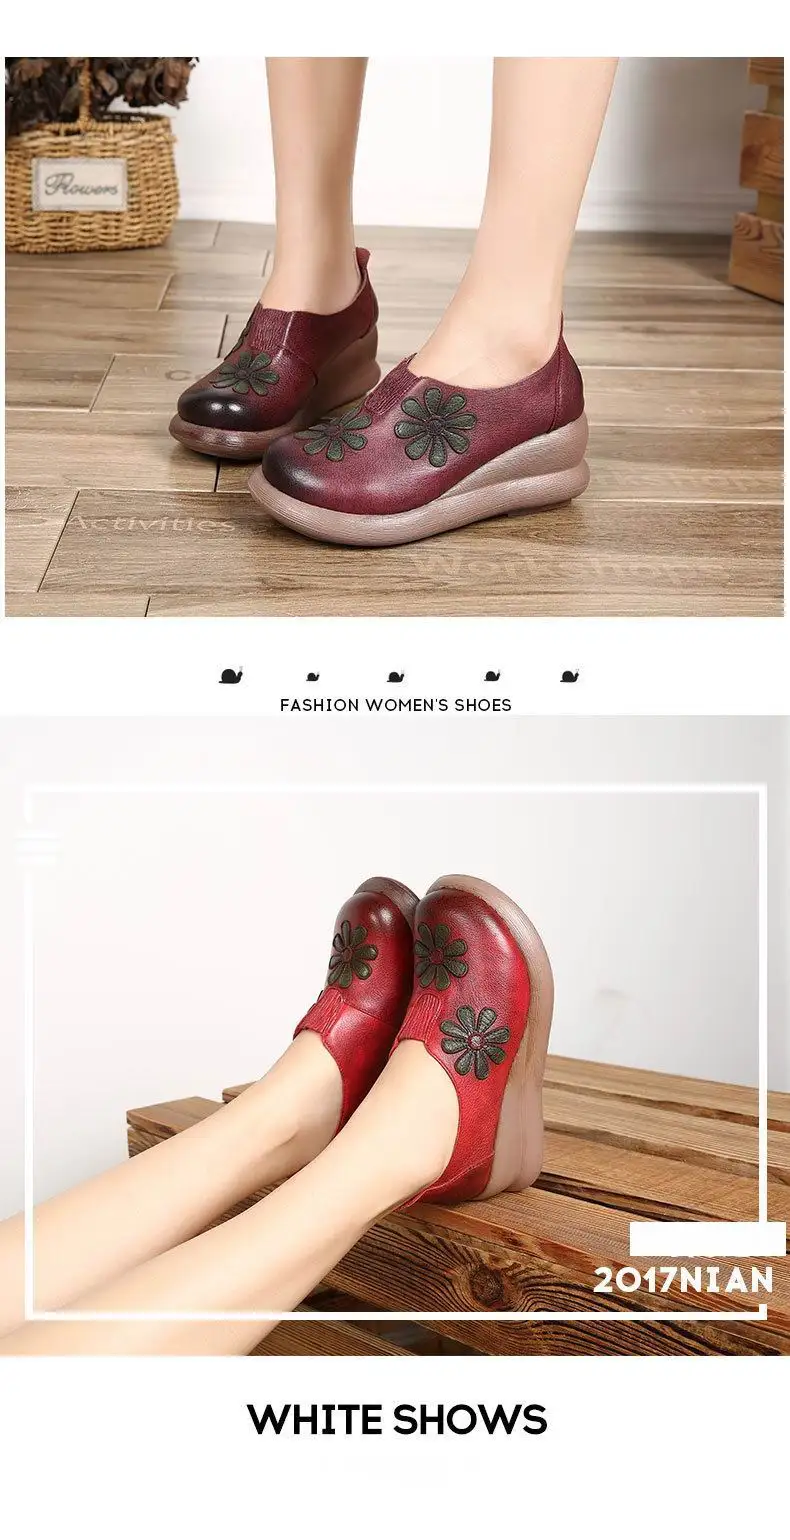 GKTINOO/женские модные туфли на высокой танкетке с вышитыми цветами; женская обувь из натуральной кожи в этническом стиле; женские туфли-лодочки